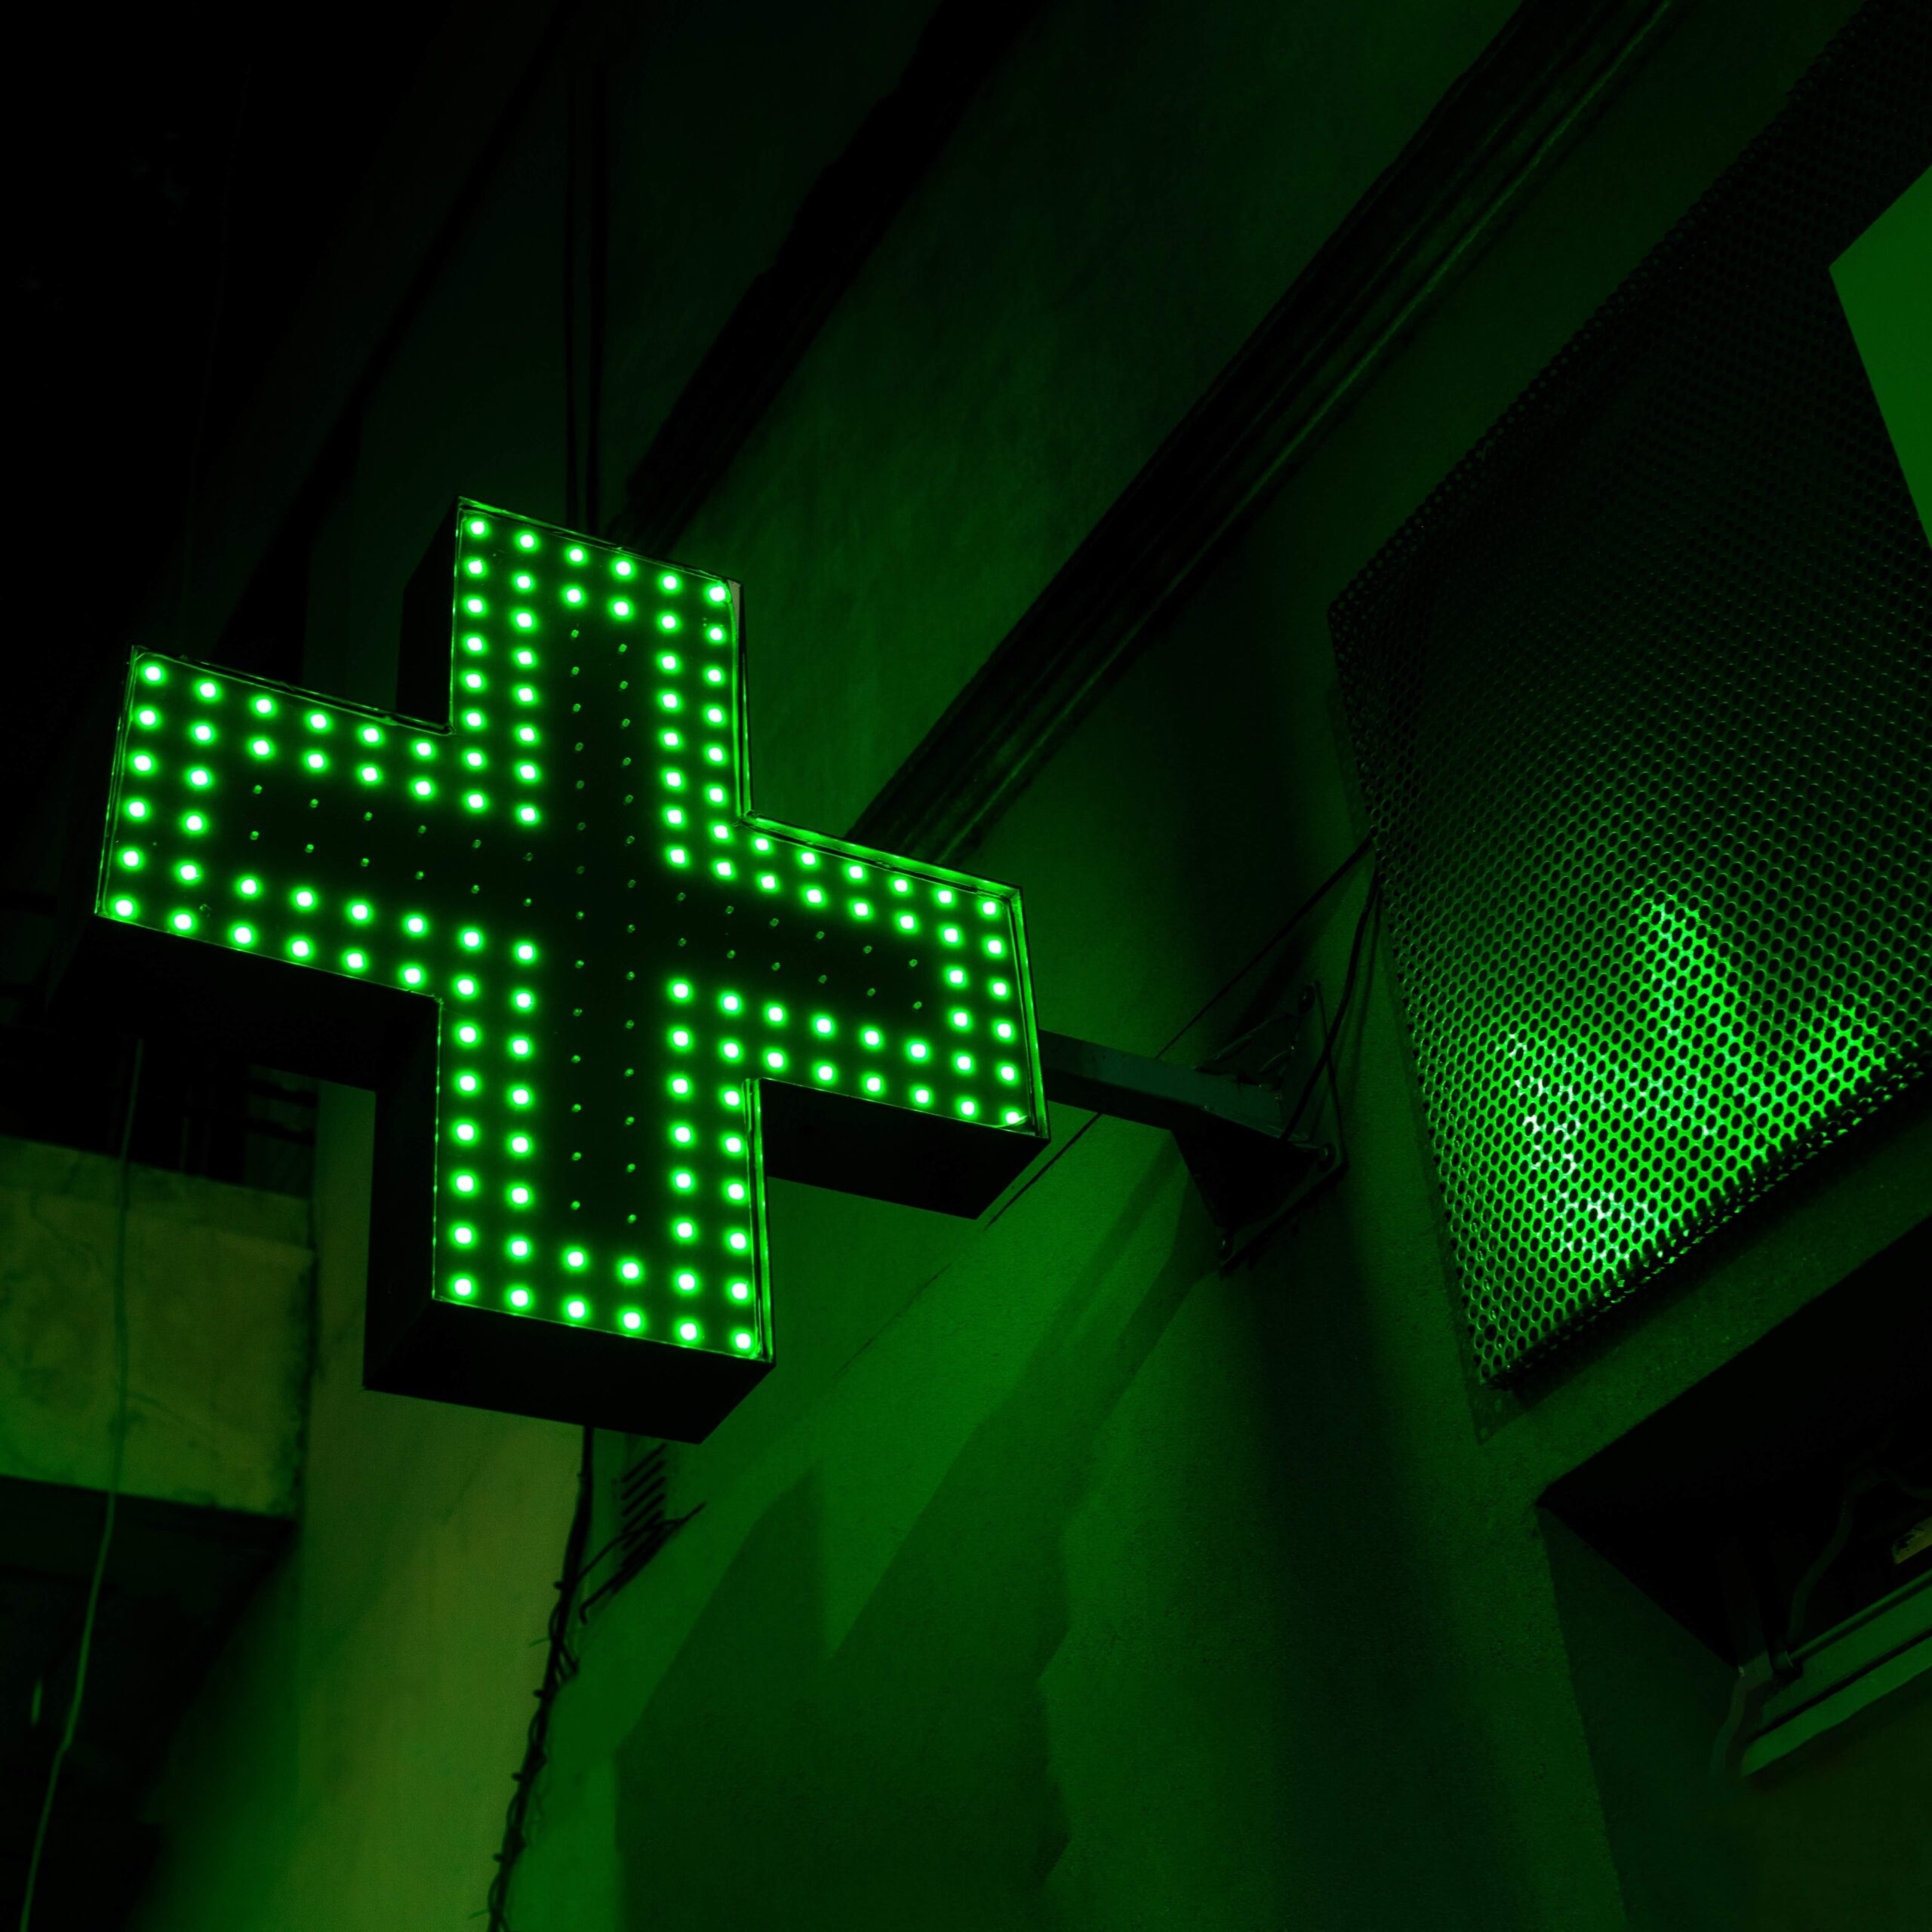 Imagen de noche de la banderola de una farmacia iluminada con leds verdes